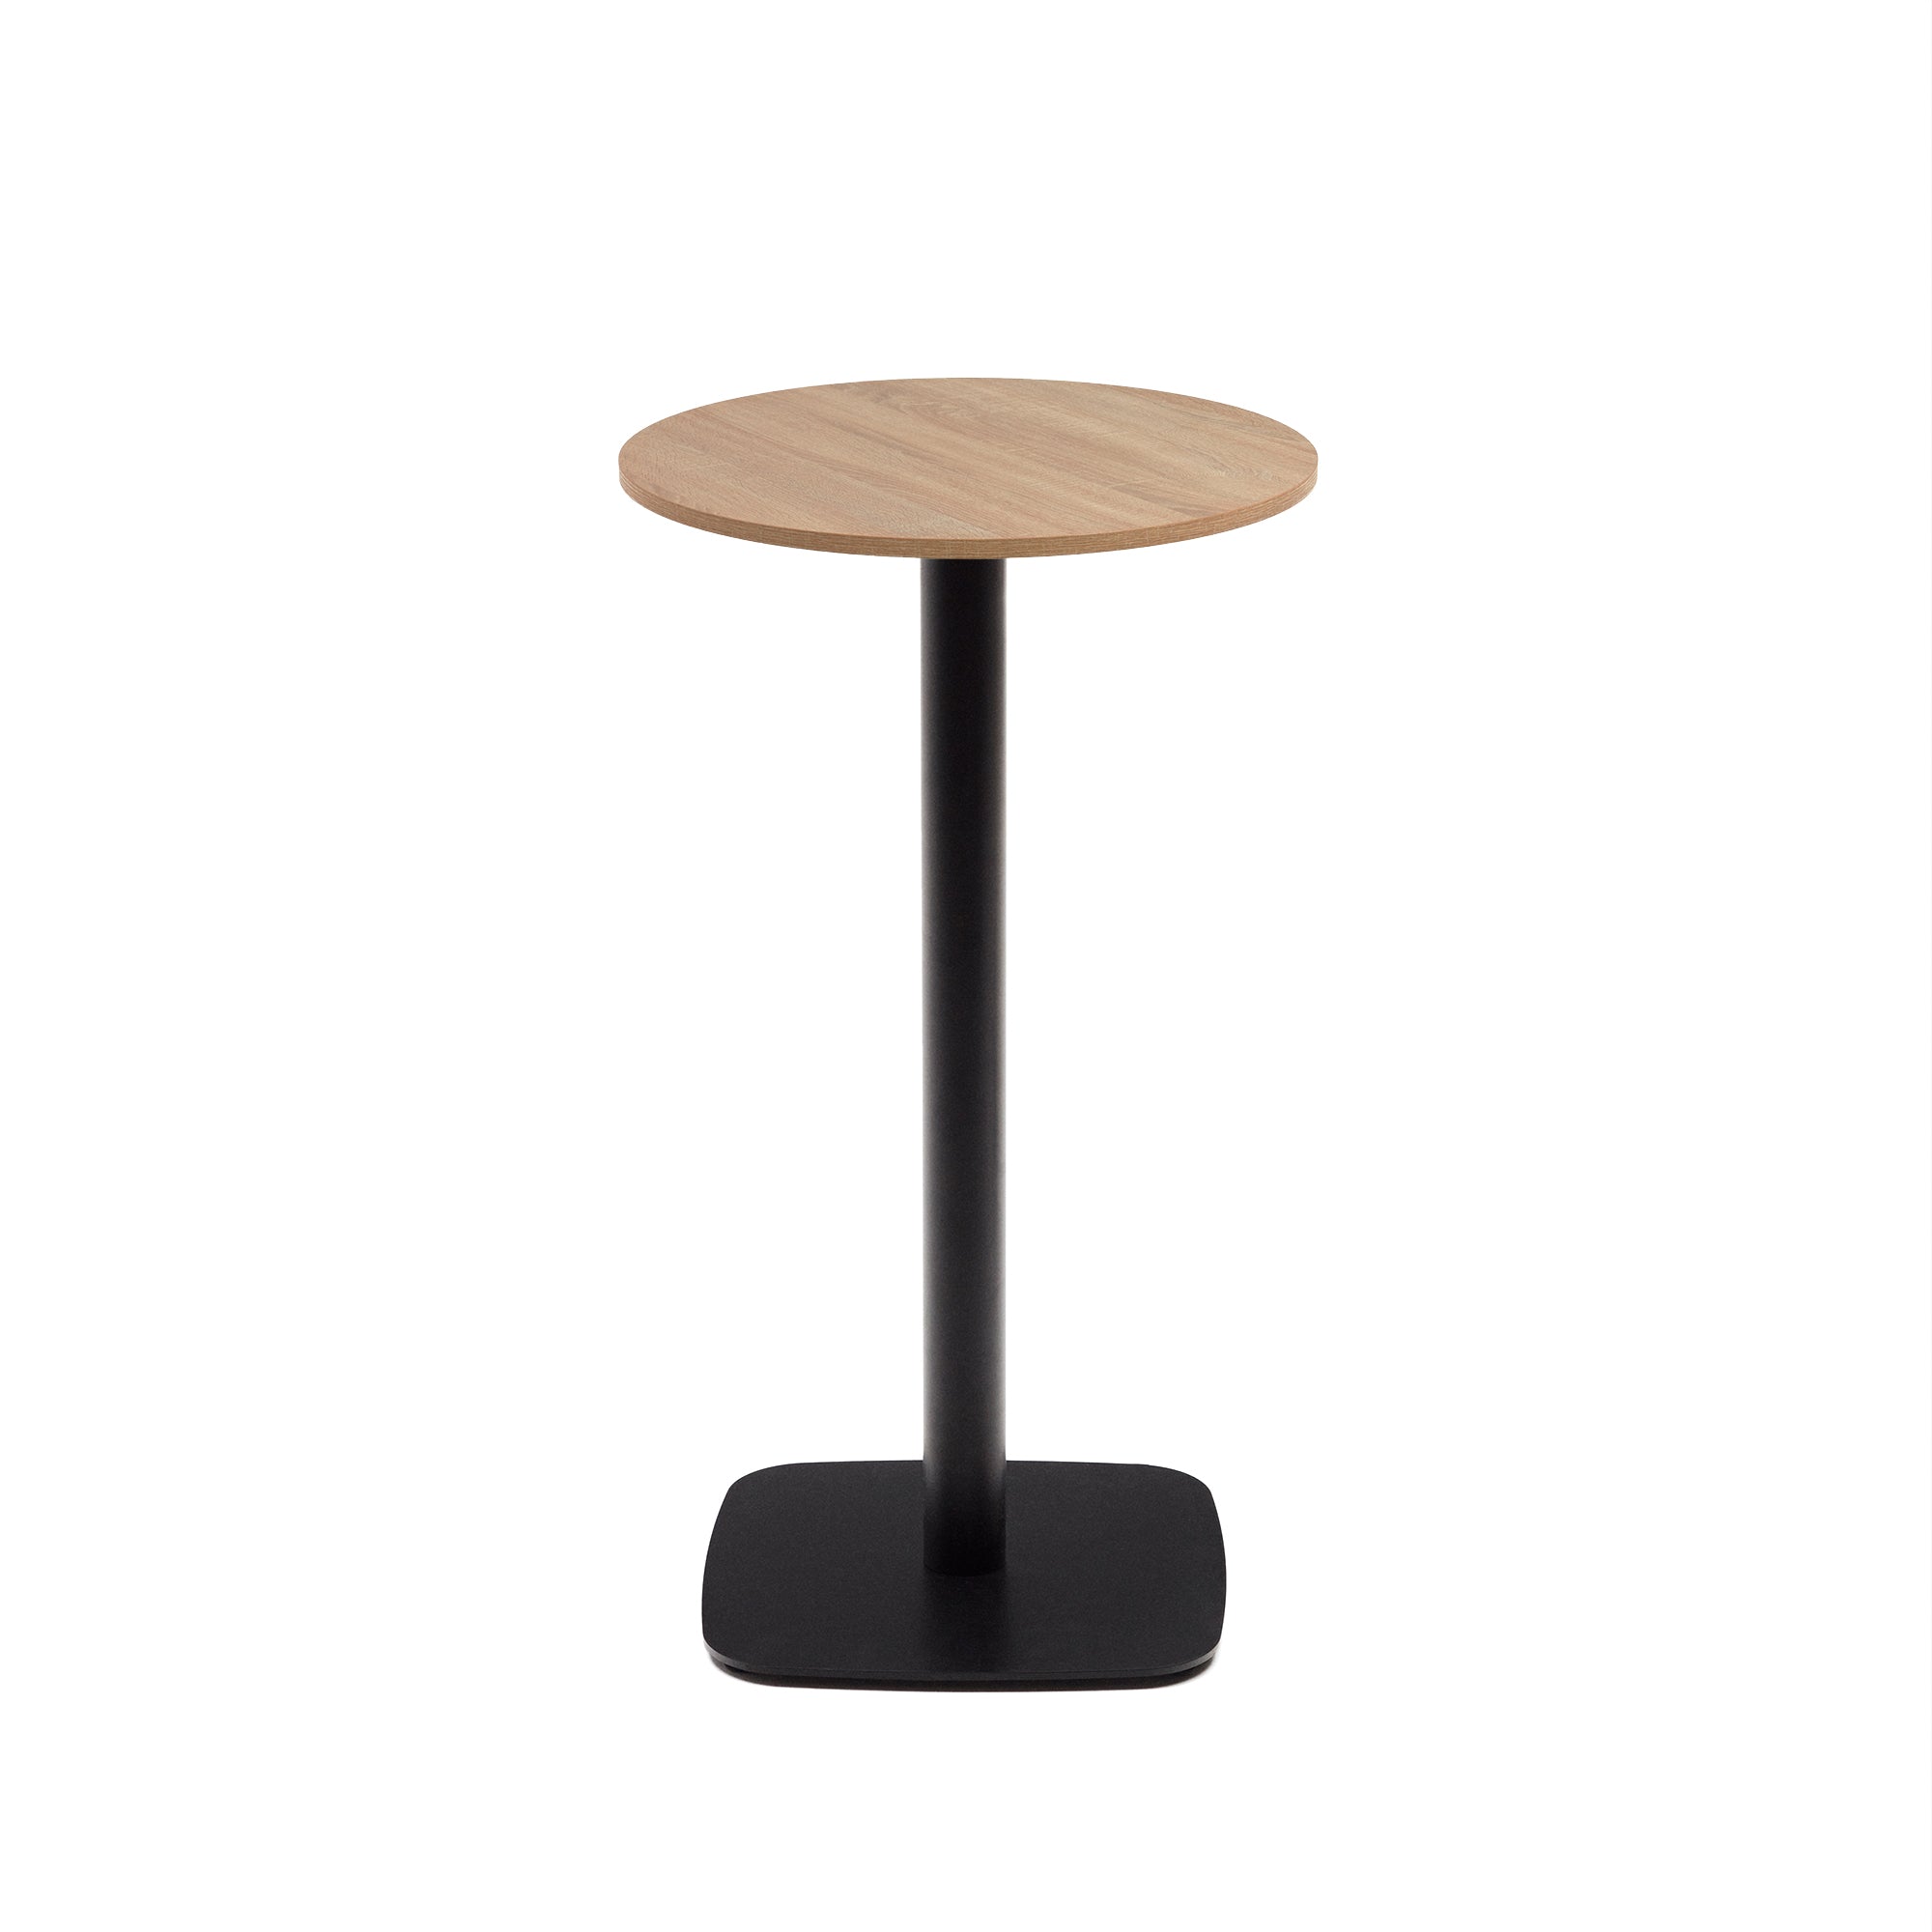 Dina magas, kerek asztal, természetes színű melaminból, fekete színű fémlábbal, Ø 60x96 cm, Ø 60x96 cm